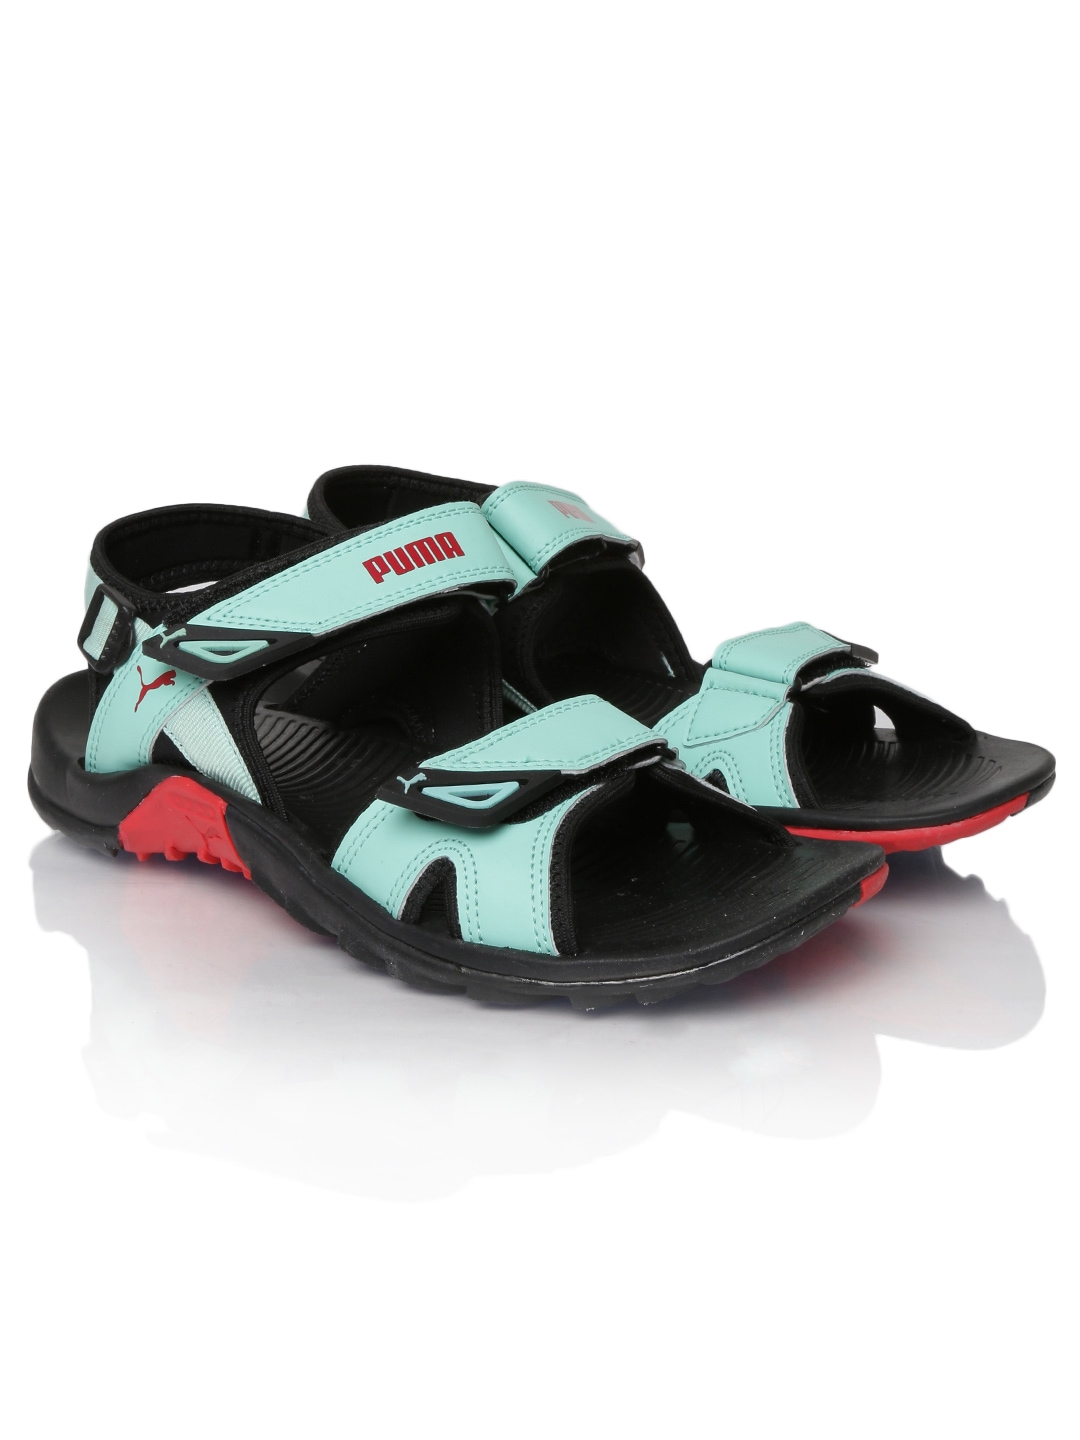 puma sports sandals myntra